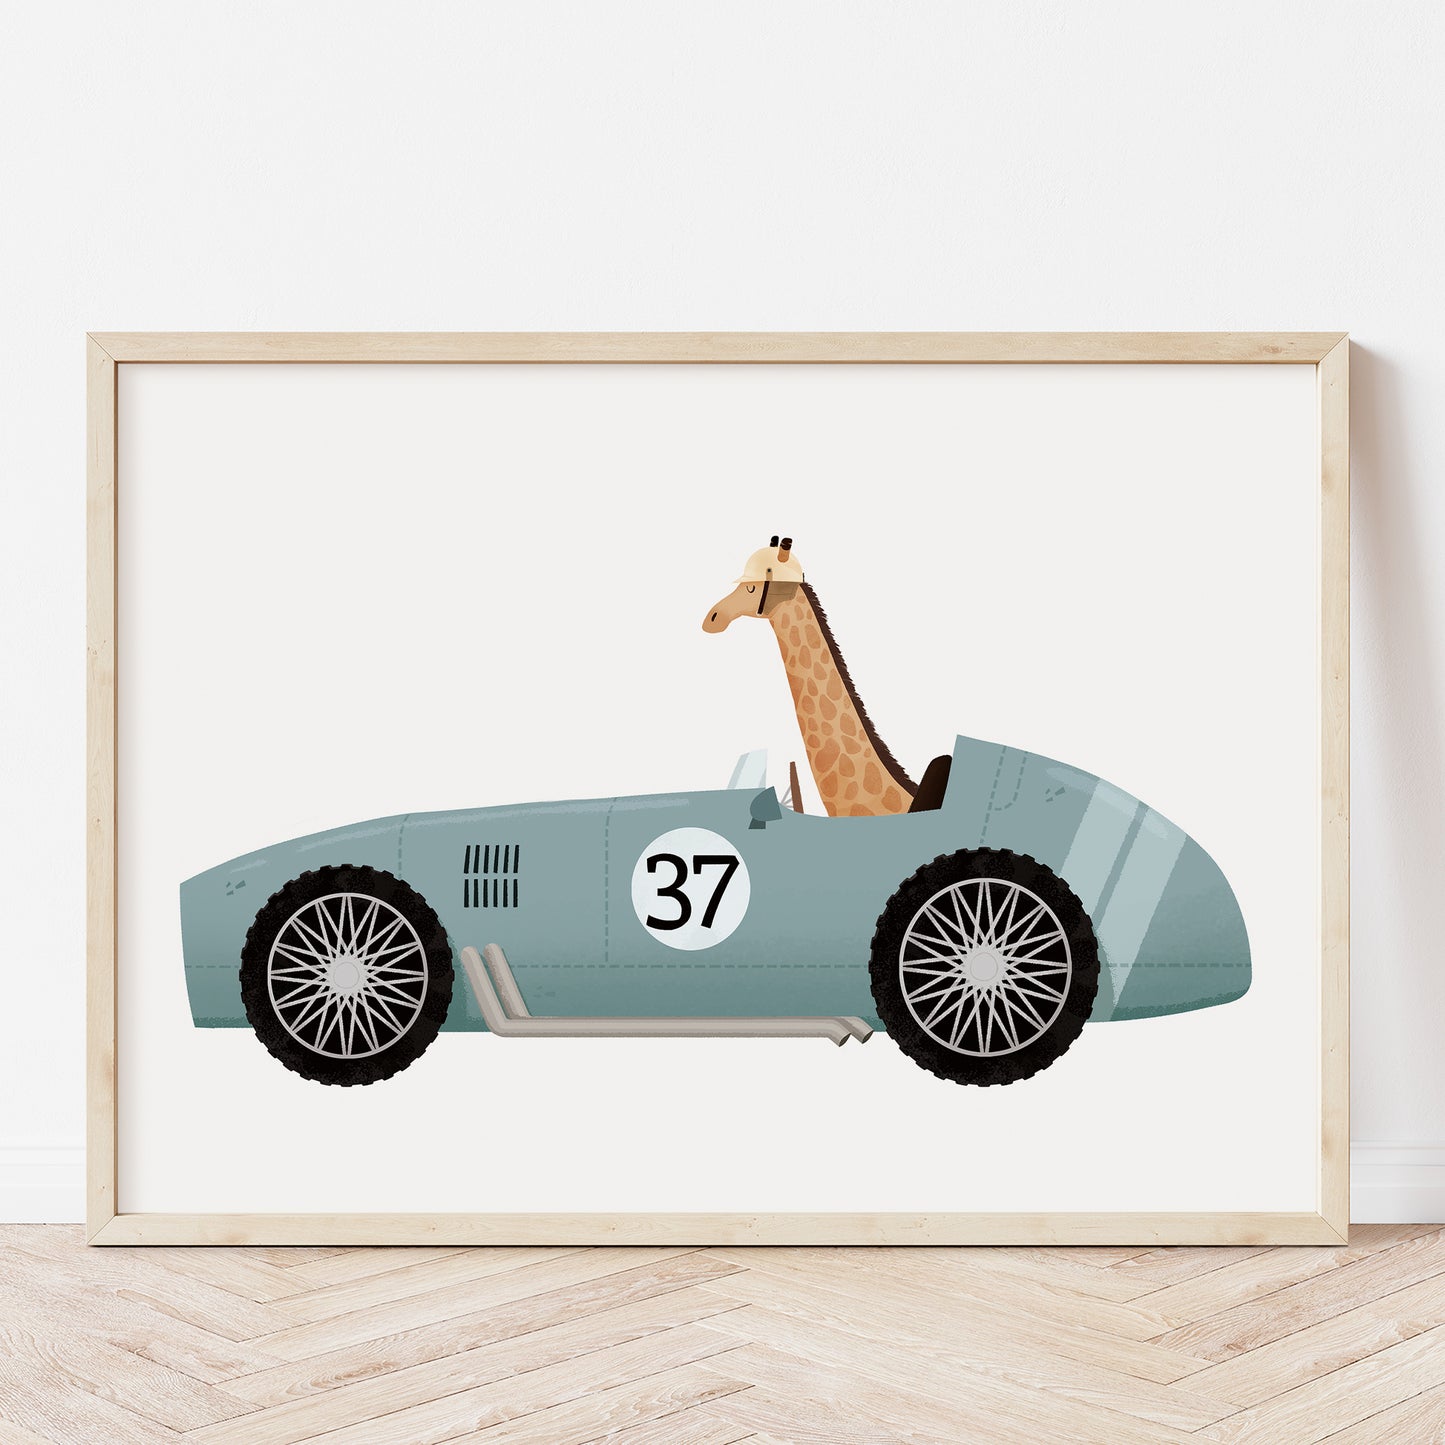 Giraffe on a vintage race car